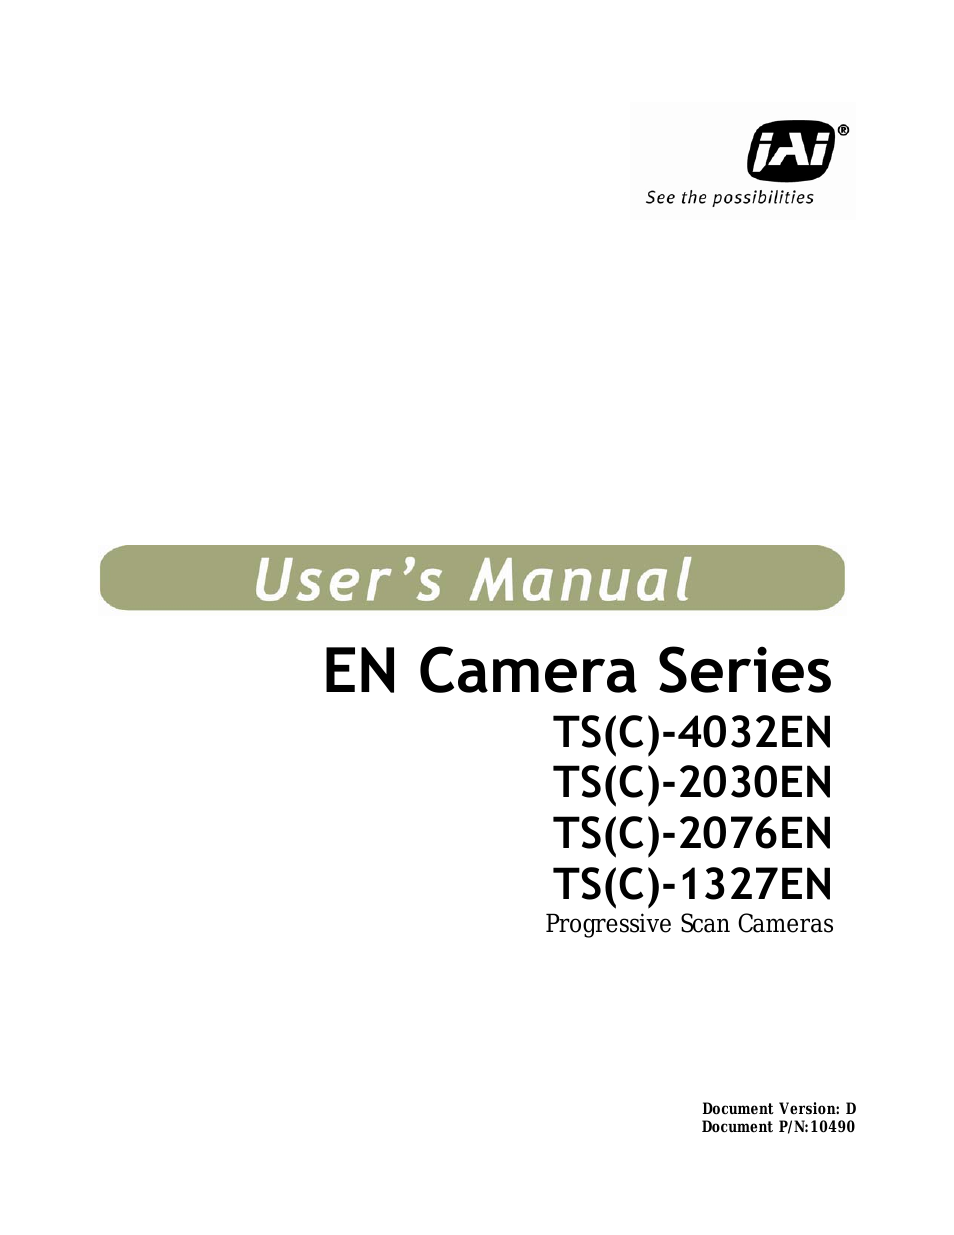 EN Series Cameras TS(C)-4032EN